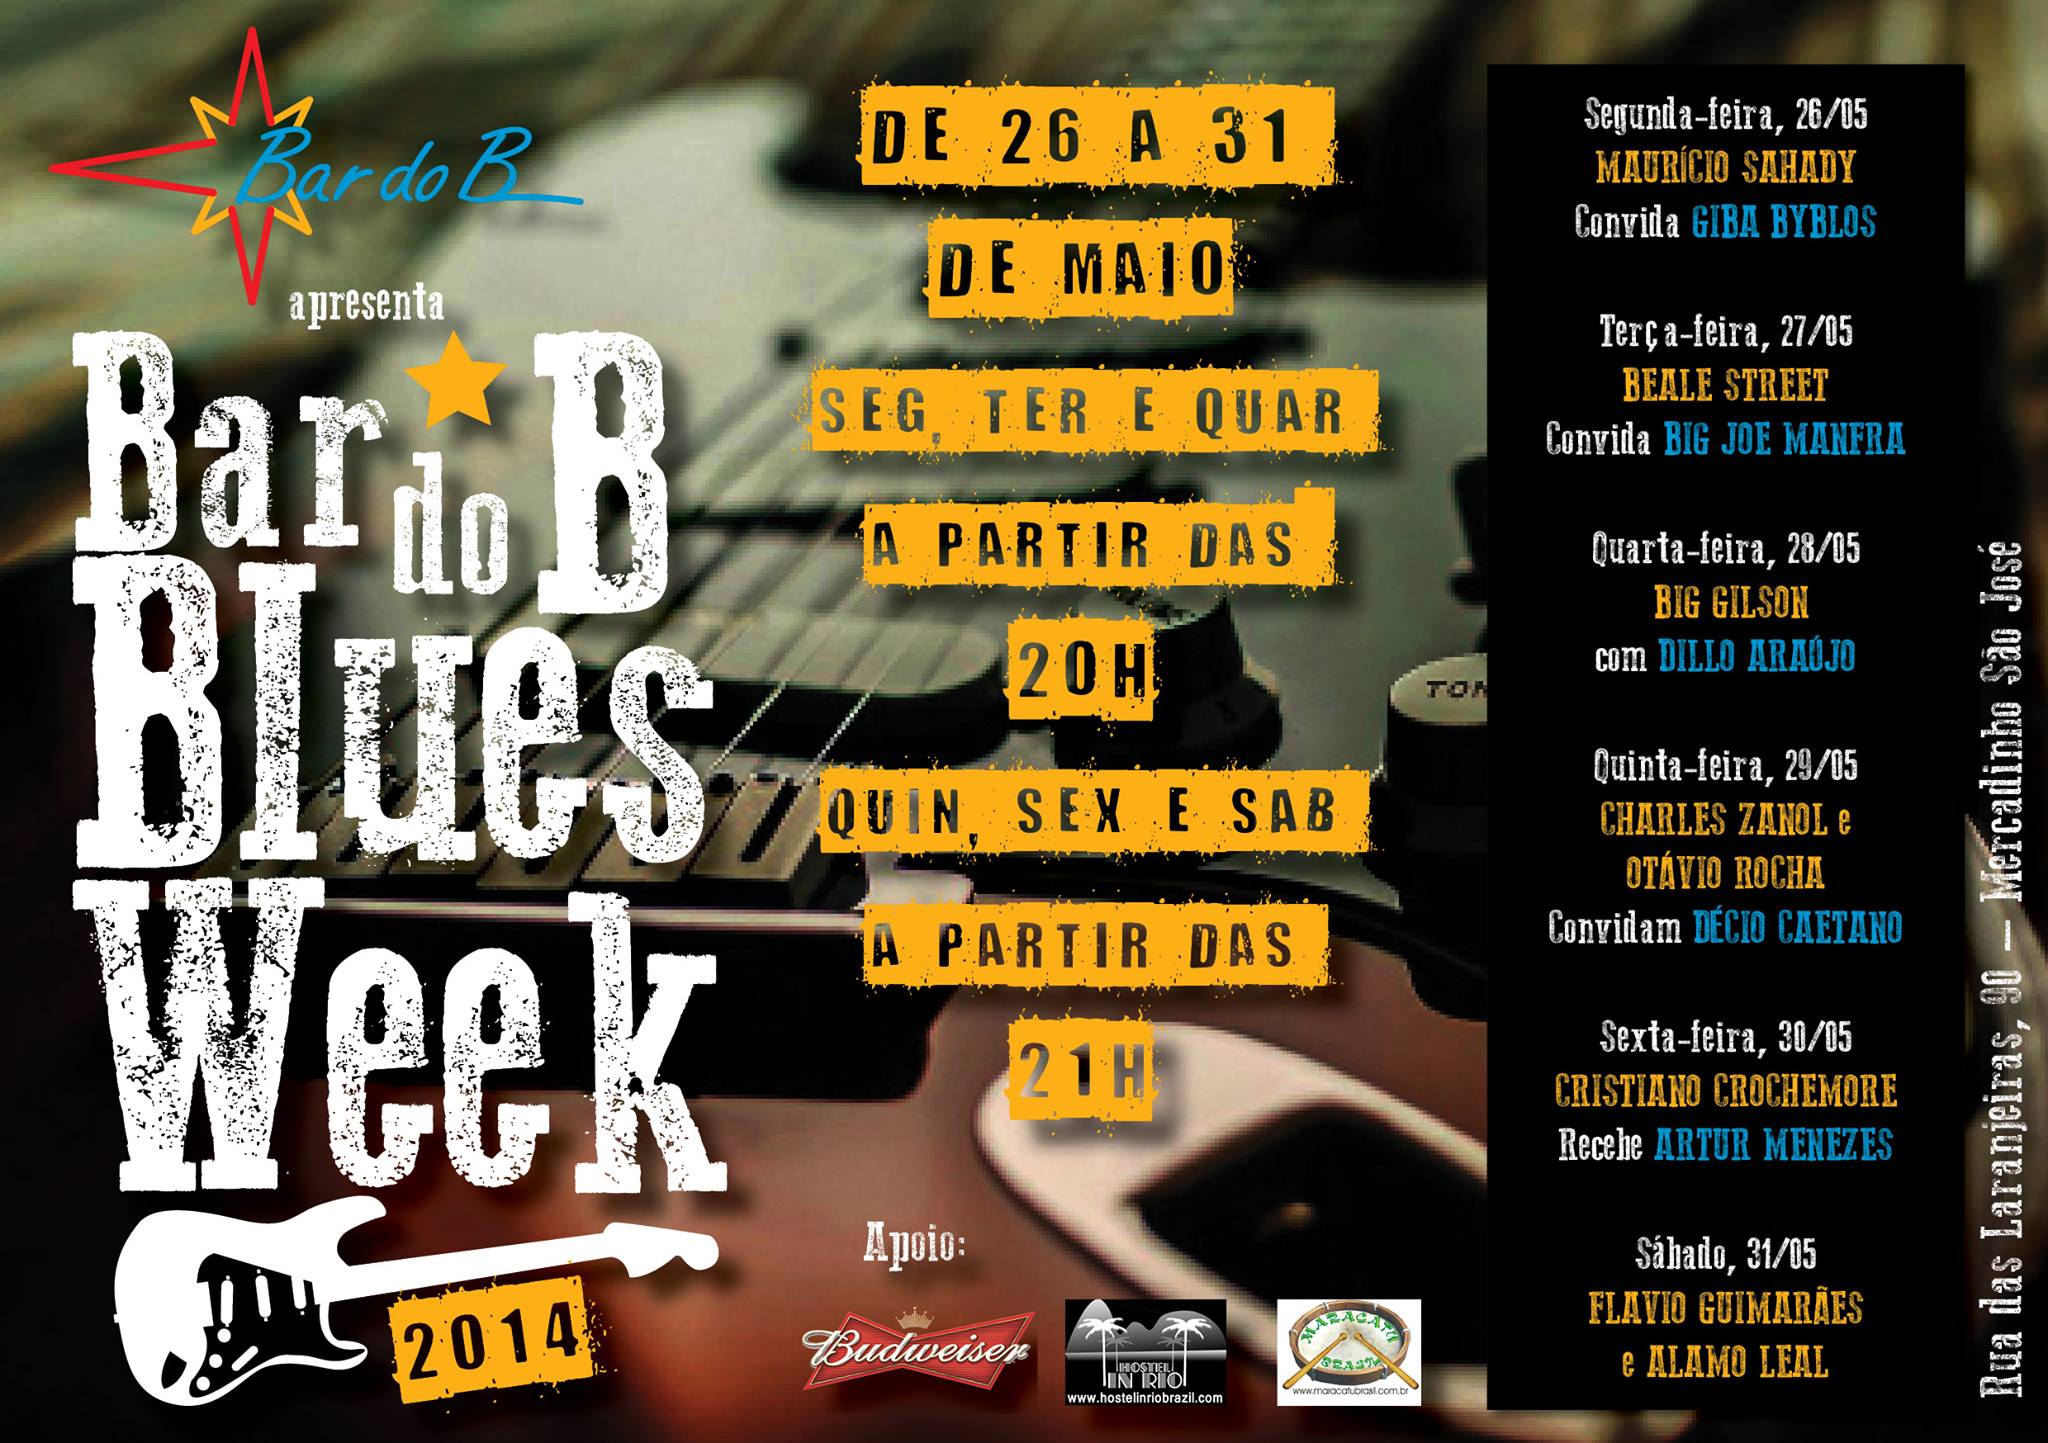 Blues in Rio, Rio de Janeiro, Brazil, Brazil News